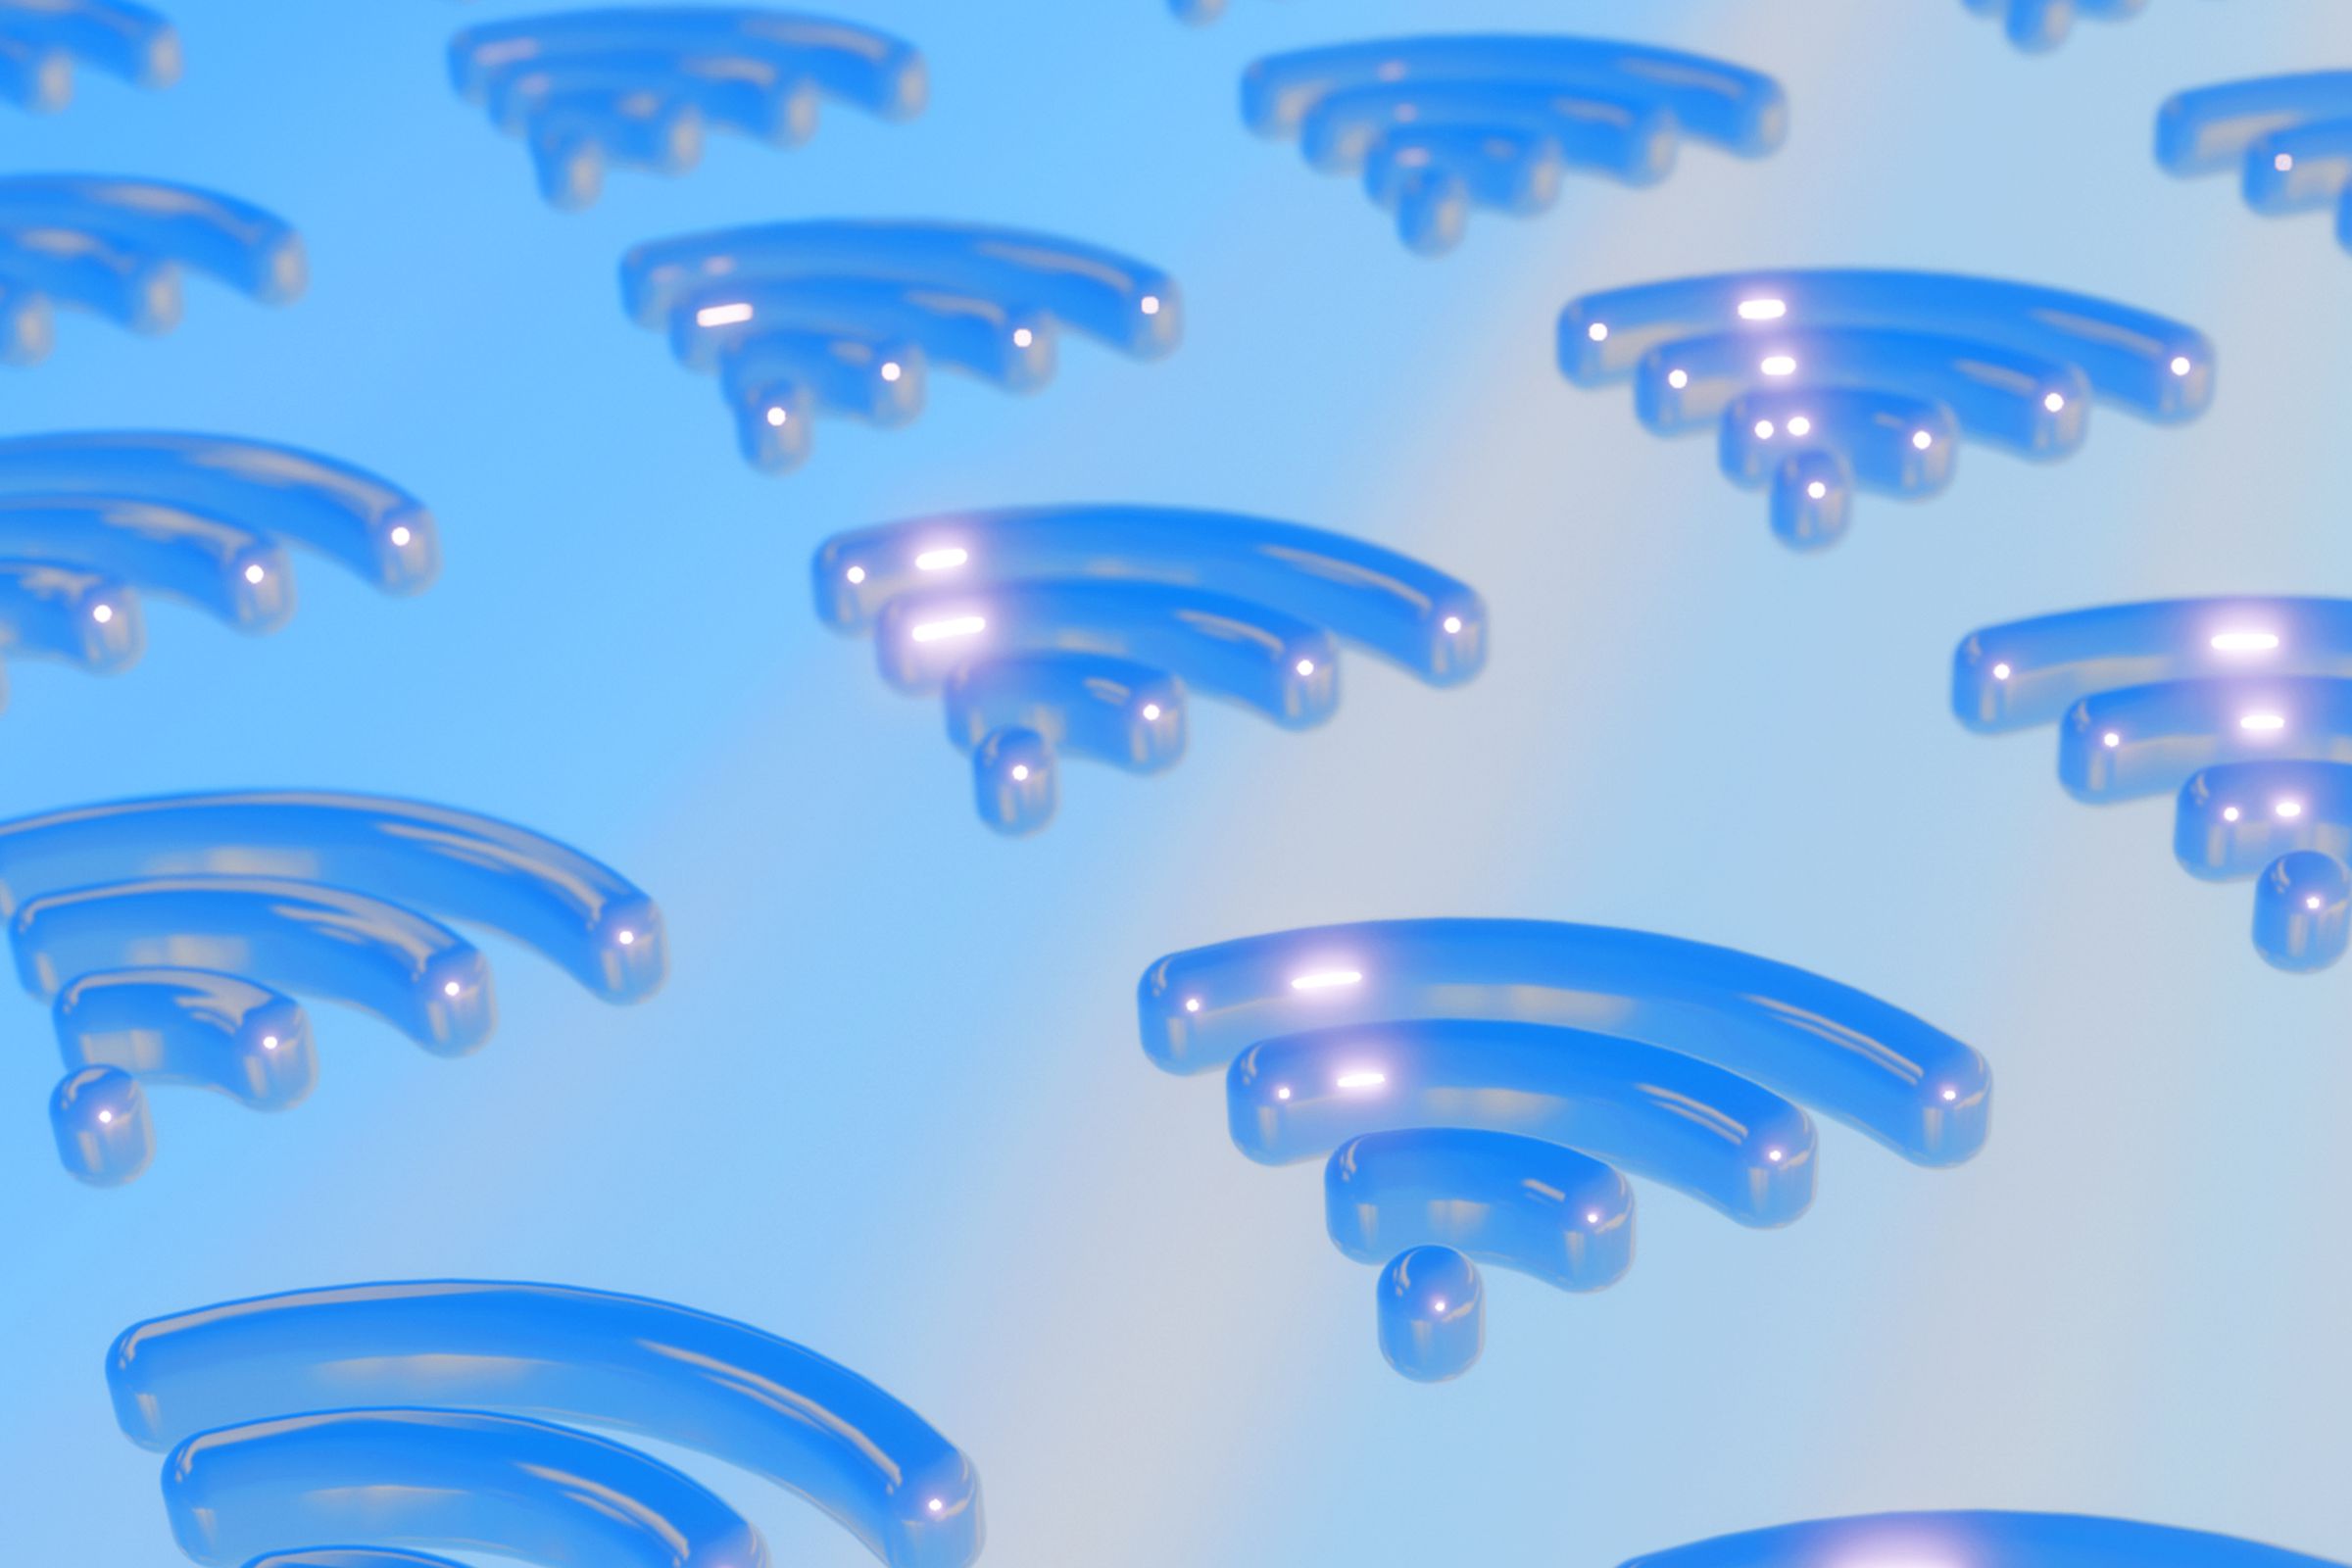 3D wifi symbols on a sky blue background.